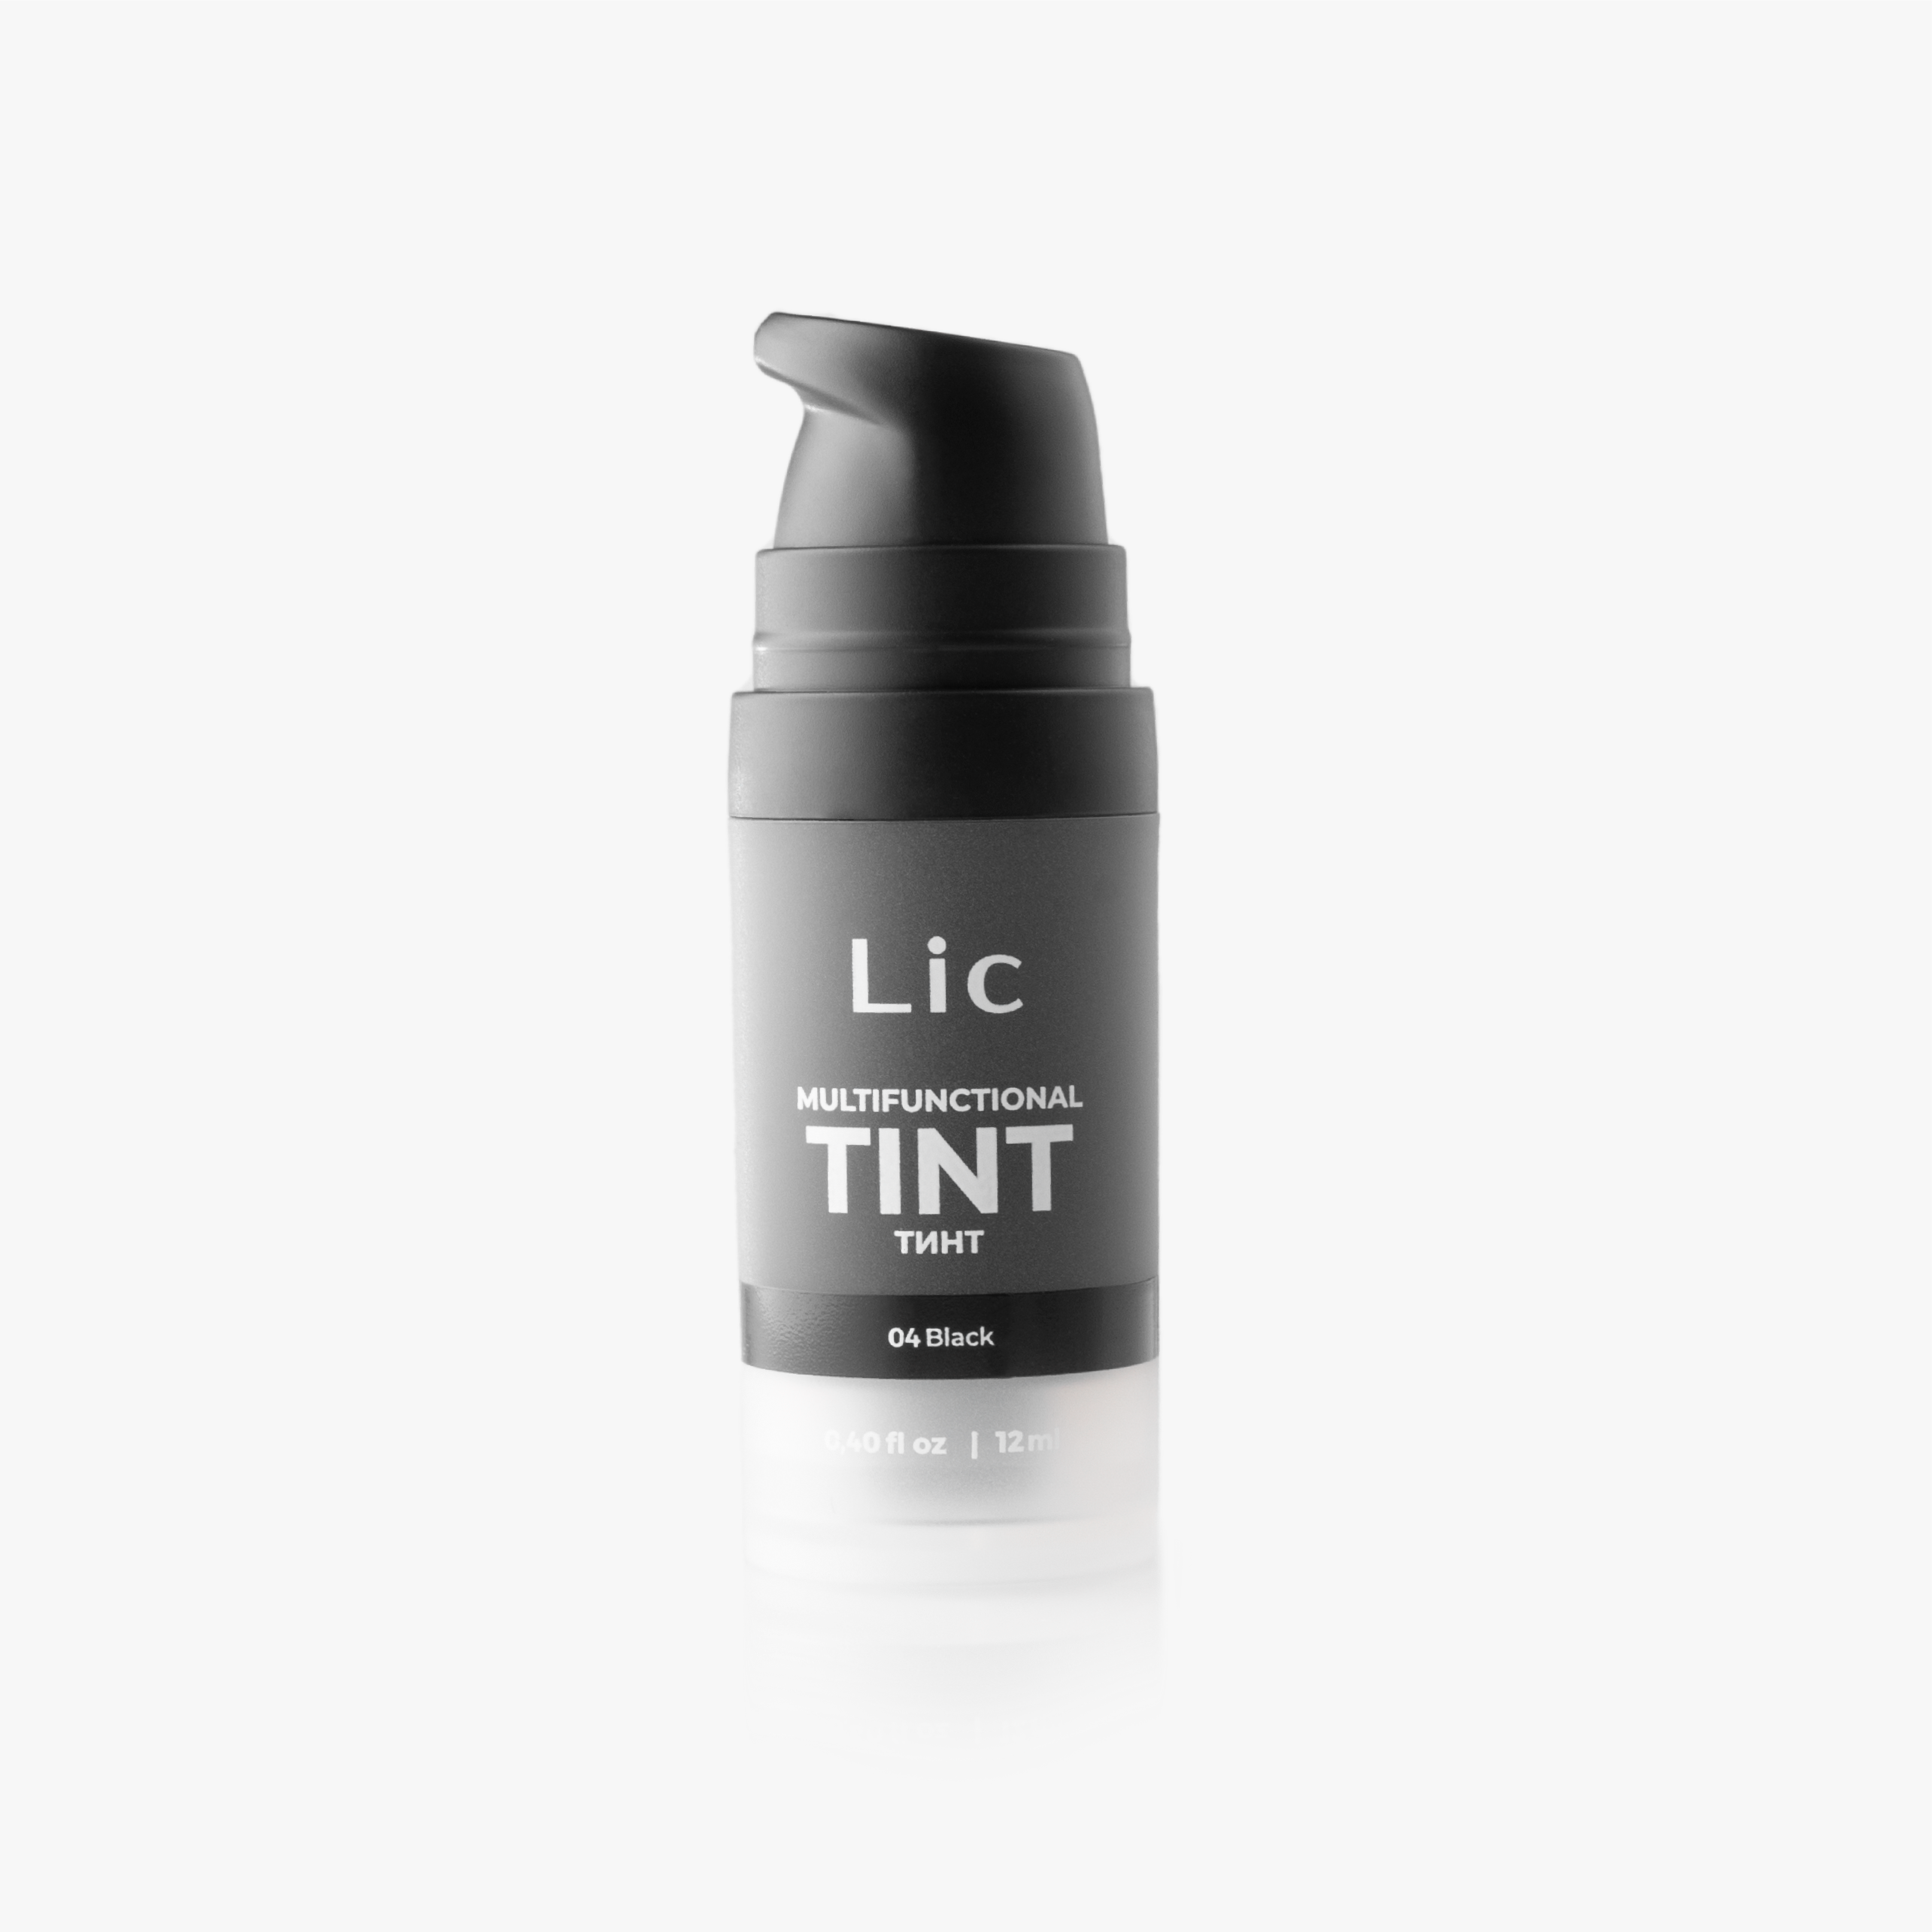 Тинт Многофункциональный Lic Tint Multifunctional Тон04 Black 12 Мл